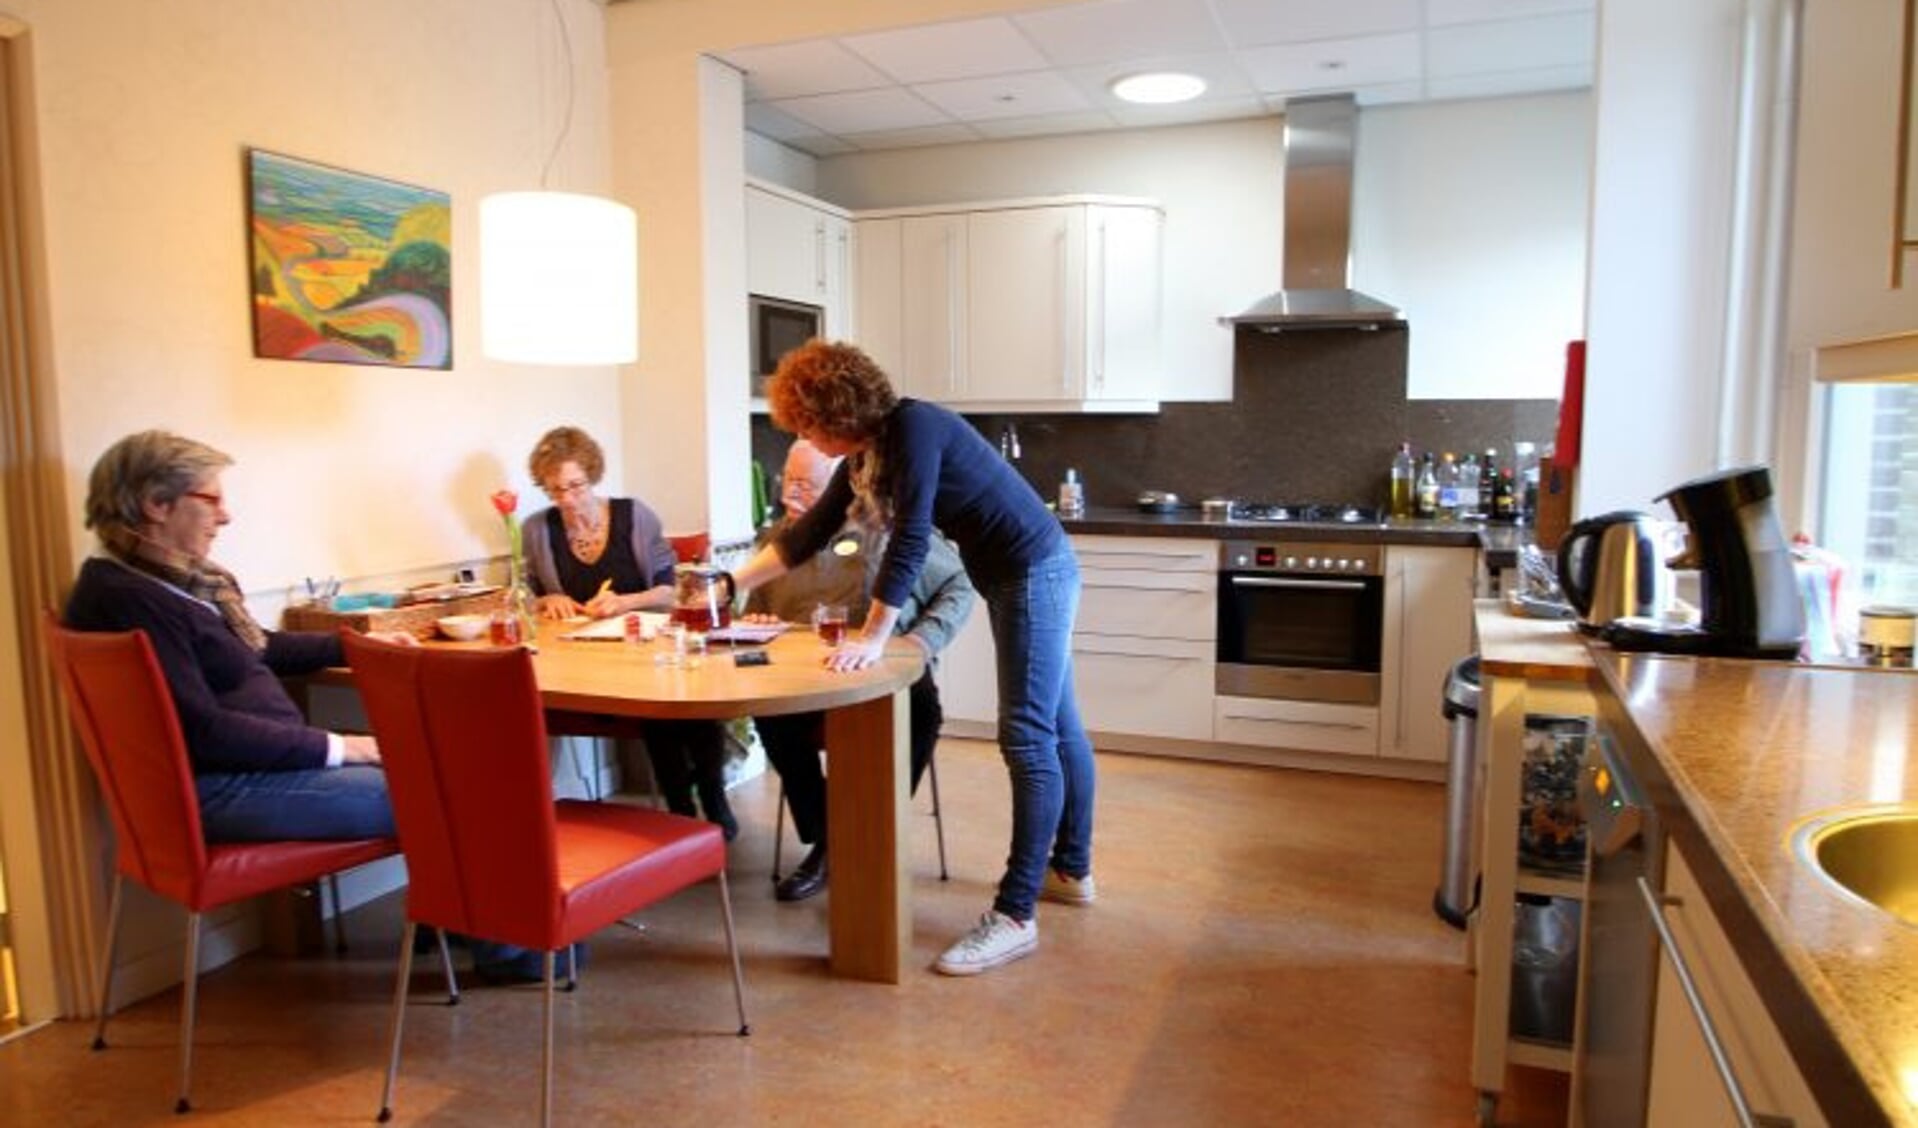 Een kijkje in de keuken bij Hospice Beverwijk.